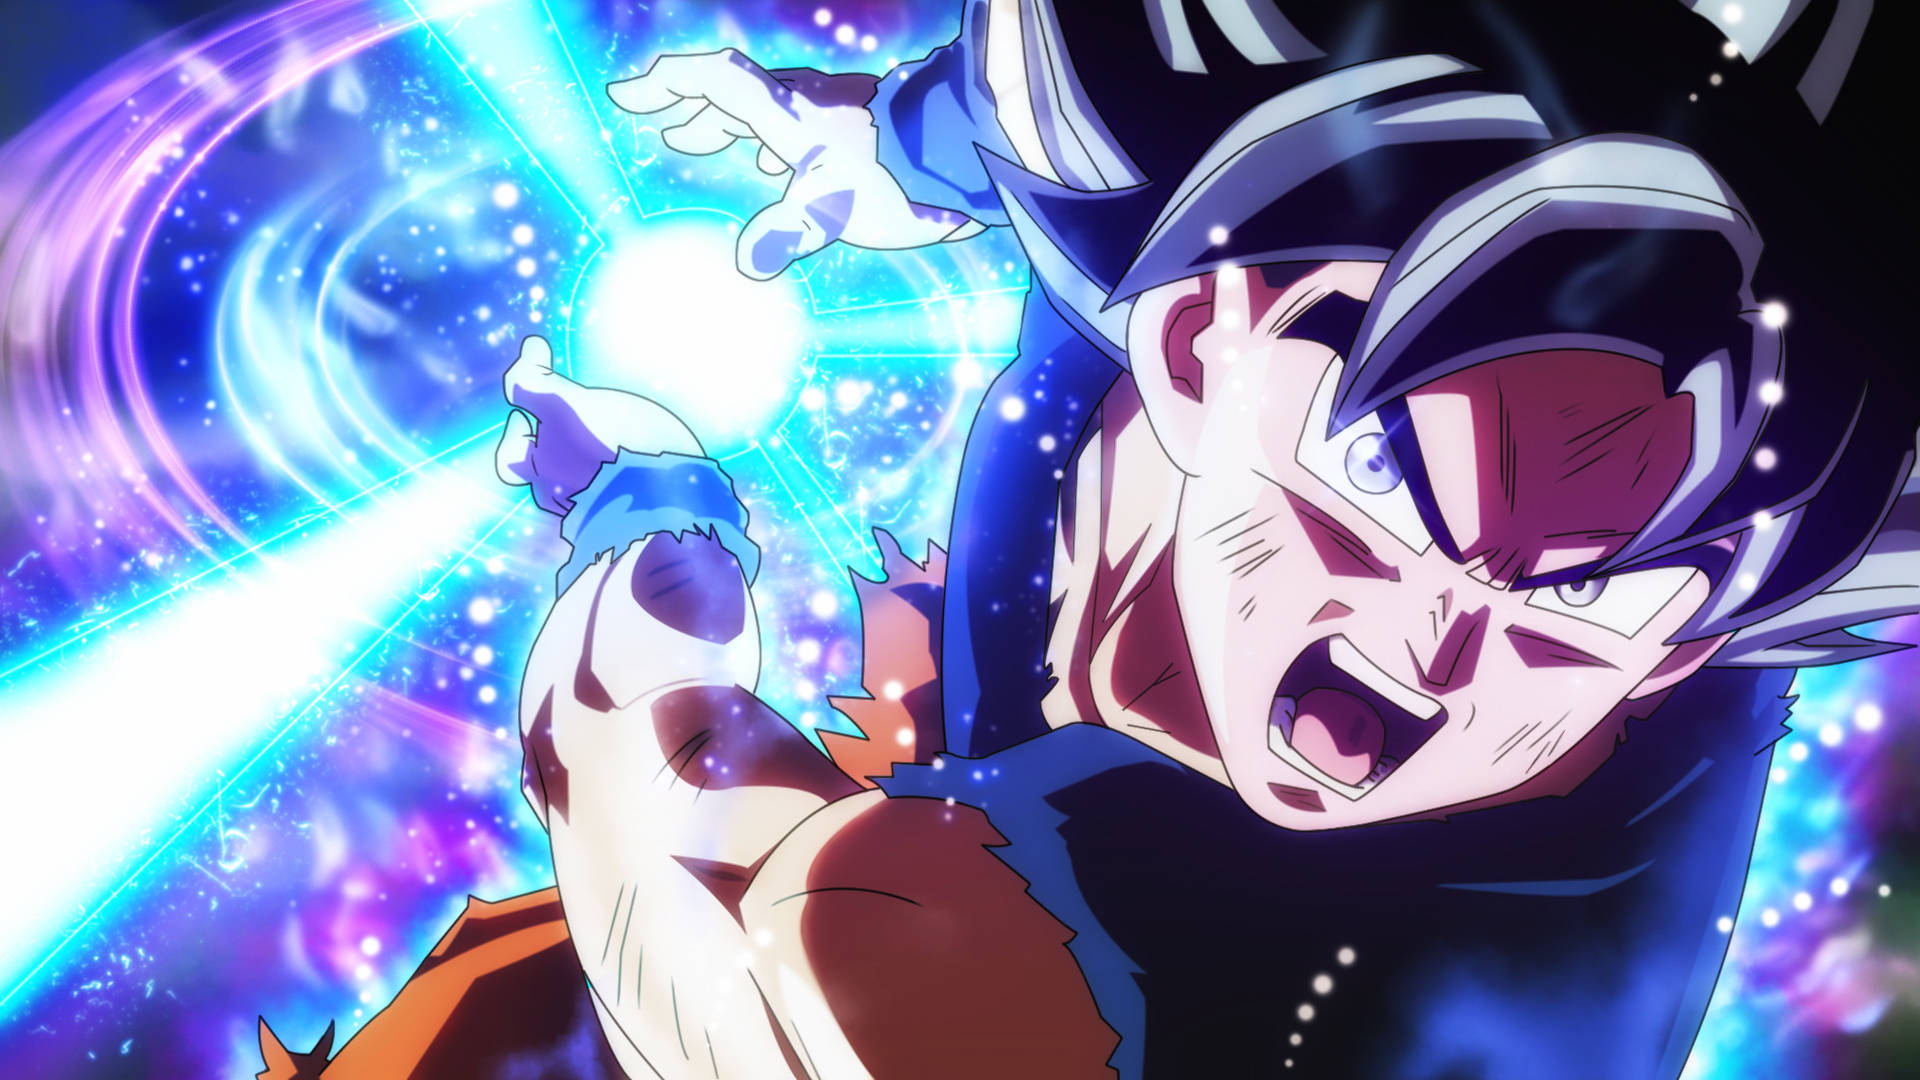 Éum Personagem Popular De Anime E Manga Que Muitas Pessoas Gostam De Ter Como Papel De Parede Em Seus Computadores Ou Telefones Celulares. As Imagens De Goku São Muito Coloridas E Vibrantes, E Muitas Vezes Mostram O Personagem Em Ação, Lutando Contra Vilões Perigosos. Se Você É Um Fã De Anime, Então Um Papel De Parede De Goku Pode Ser A Escolha Perfeita Para Você! Papel de Parede